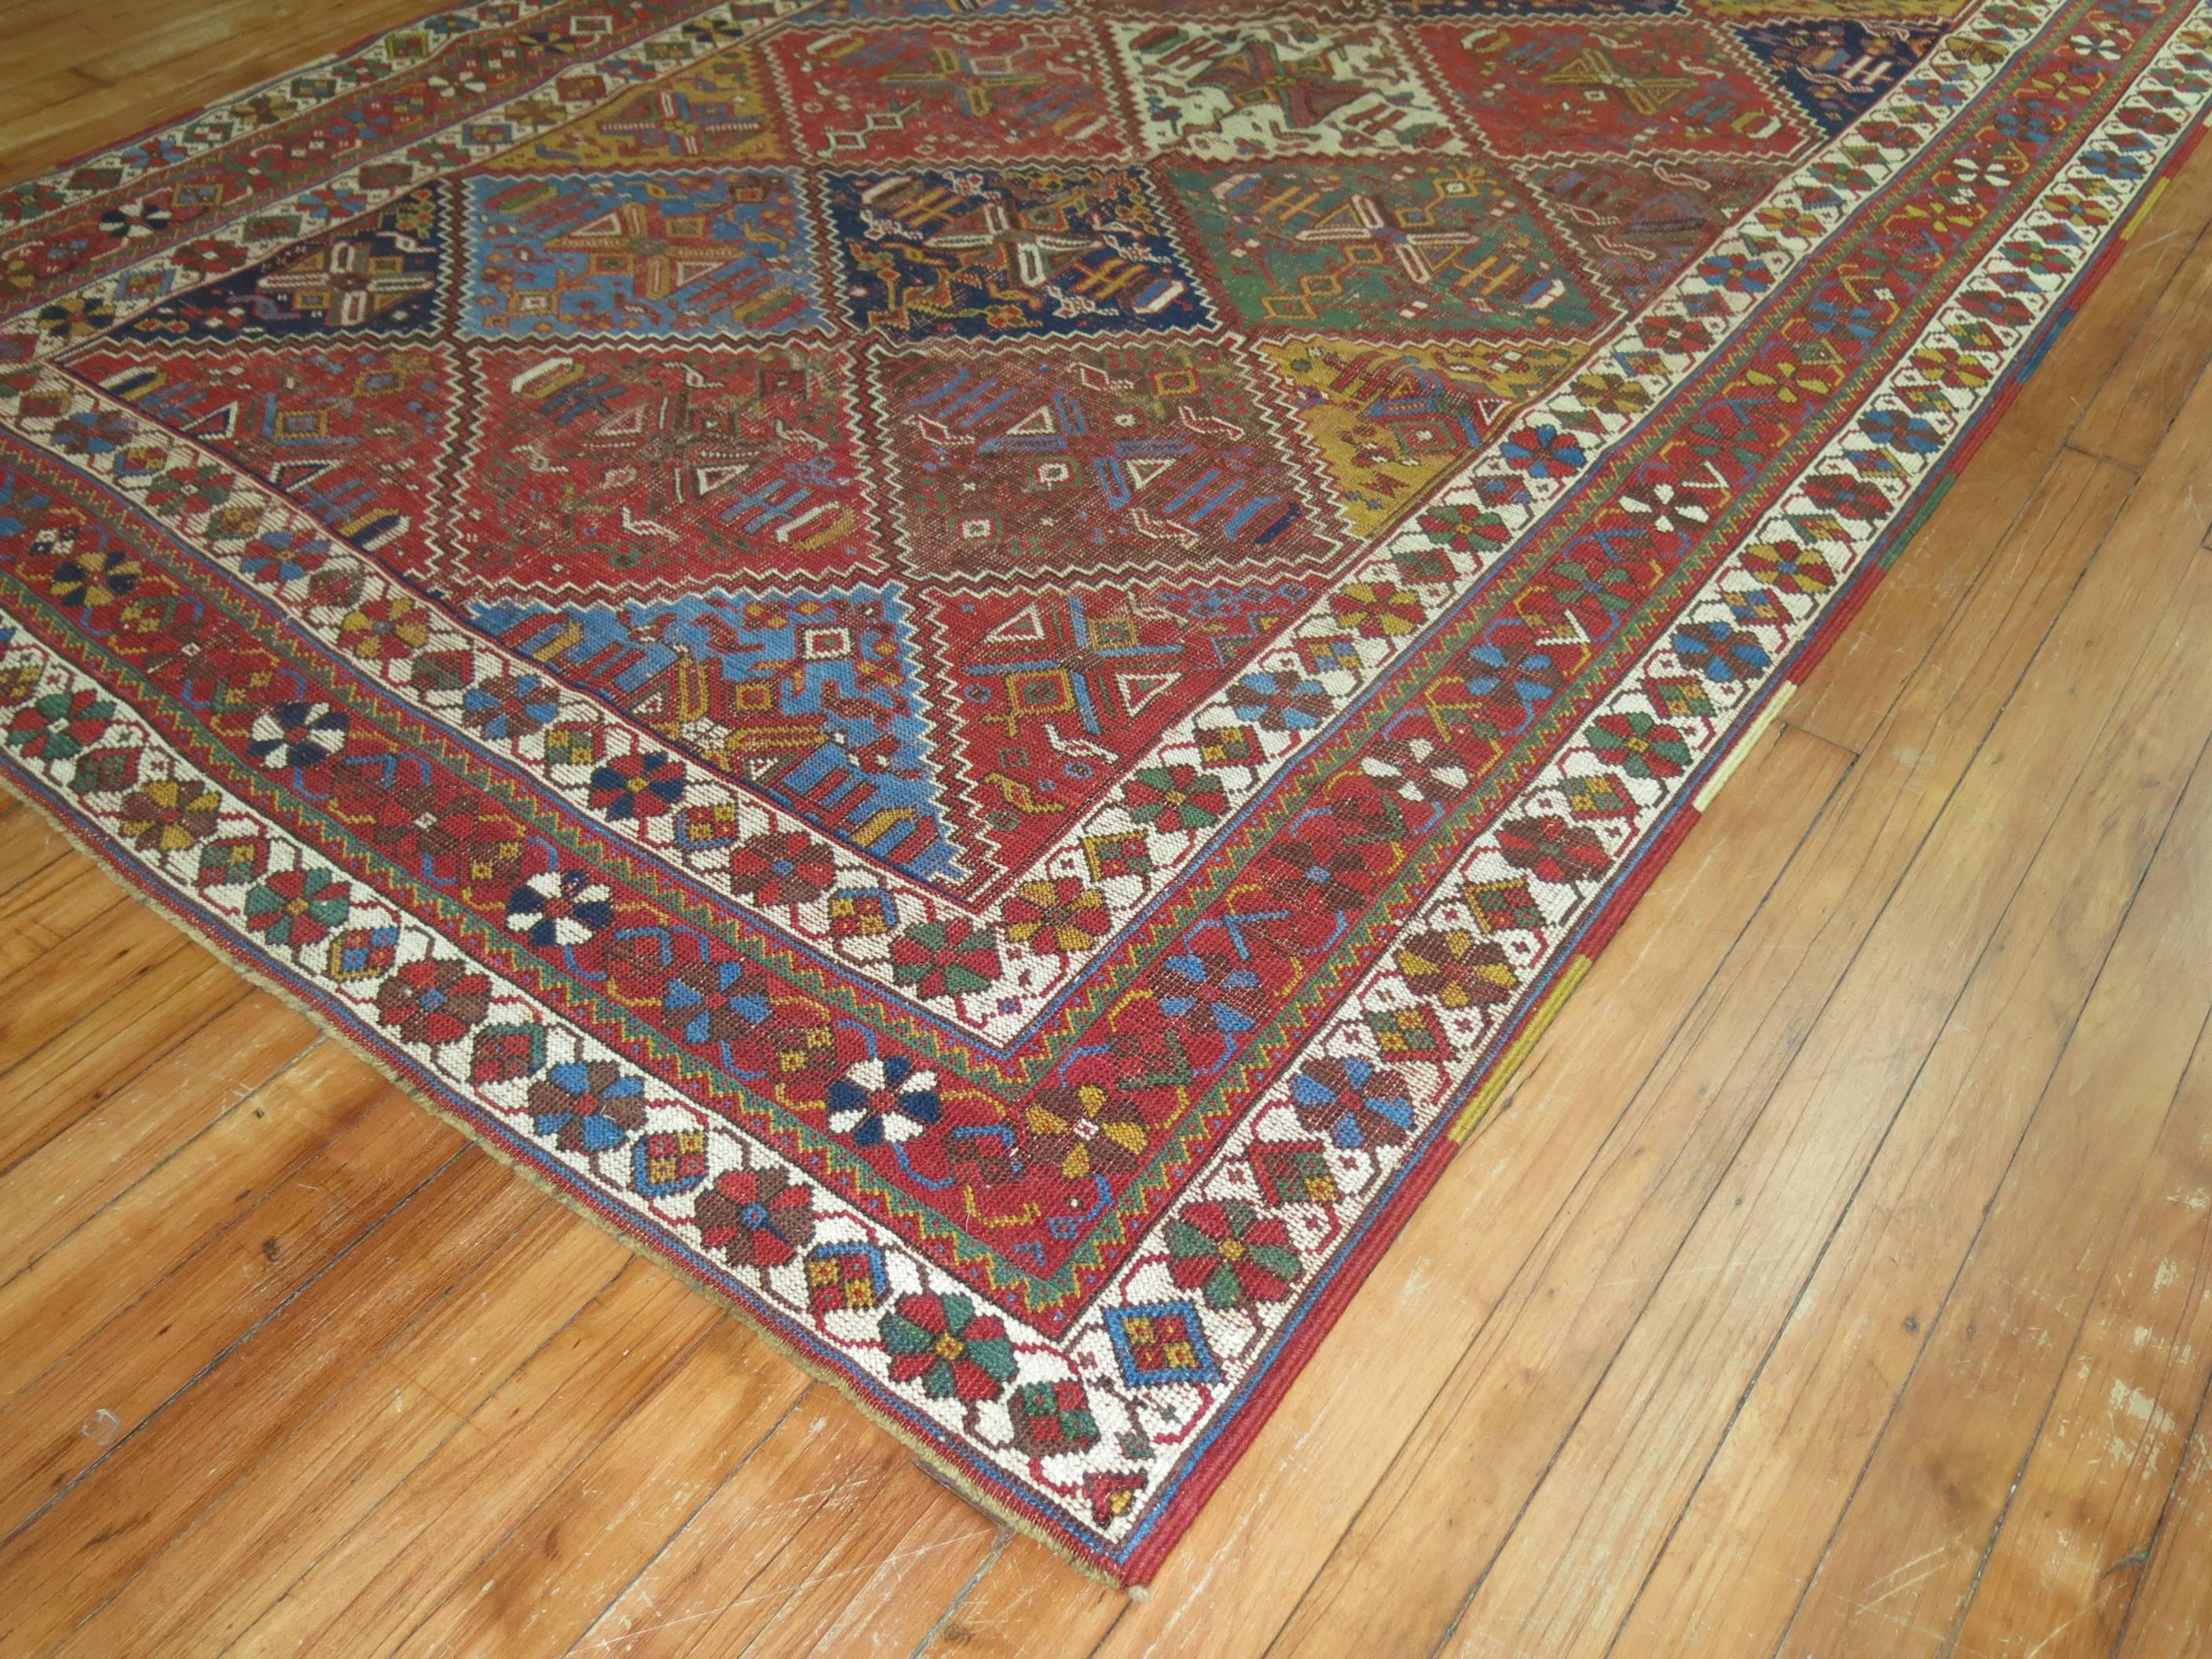 Ein verwitterter, strukturierter persischer Afshar-Teppich aus dem frühen 20. Jahrhundert mit einem farbenfrohen, rautenförmigen Allover-Muster.

Maße: 5' x 8'6''.